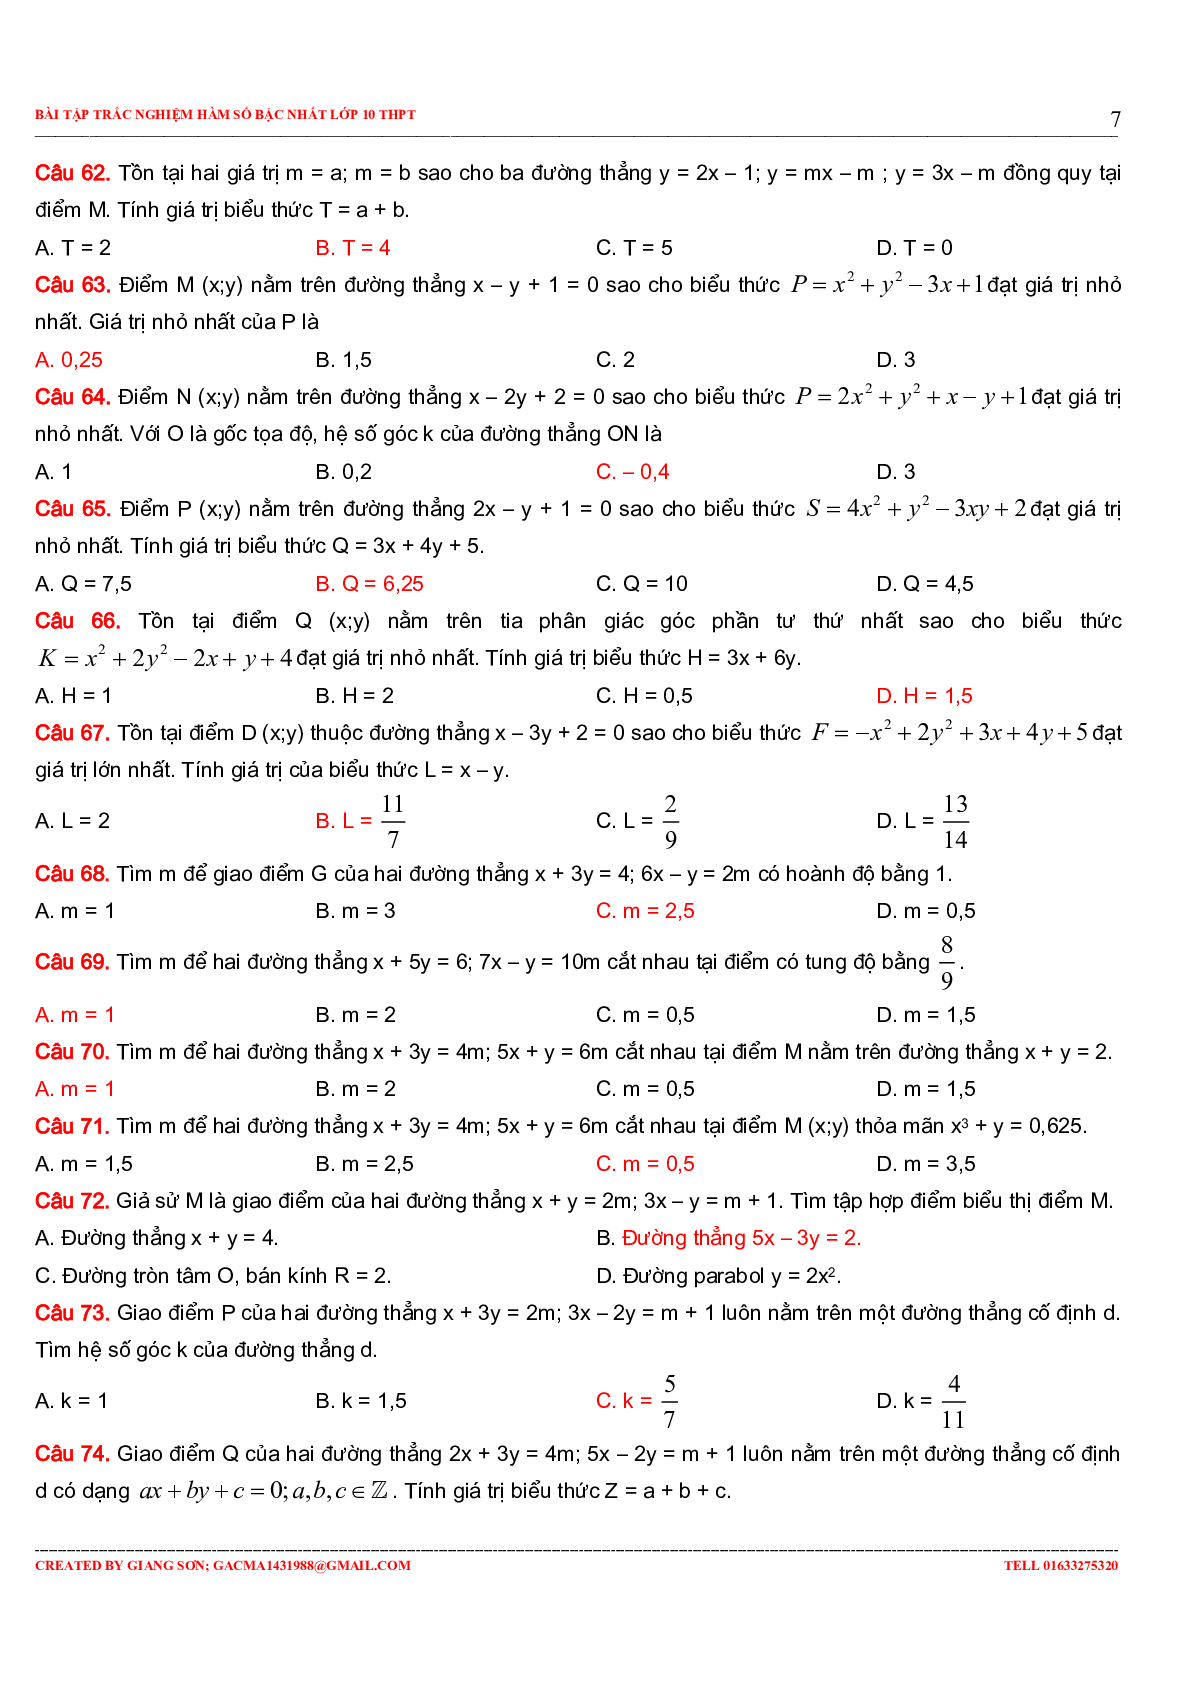 229 bài tập trắc nghiệm hàm số bậc nhất (trang 7)